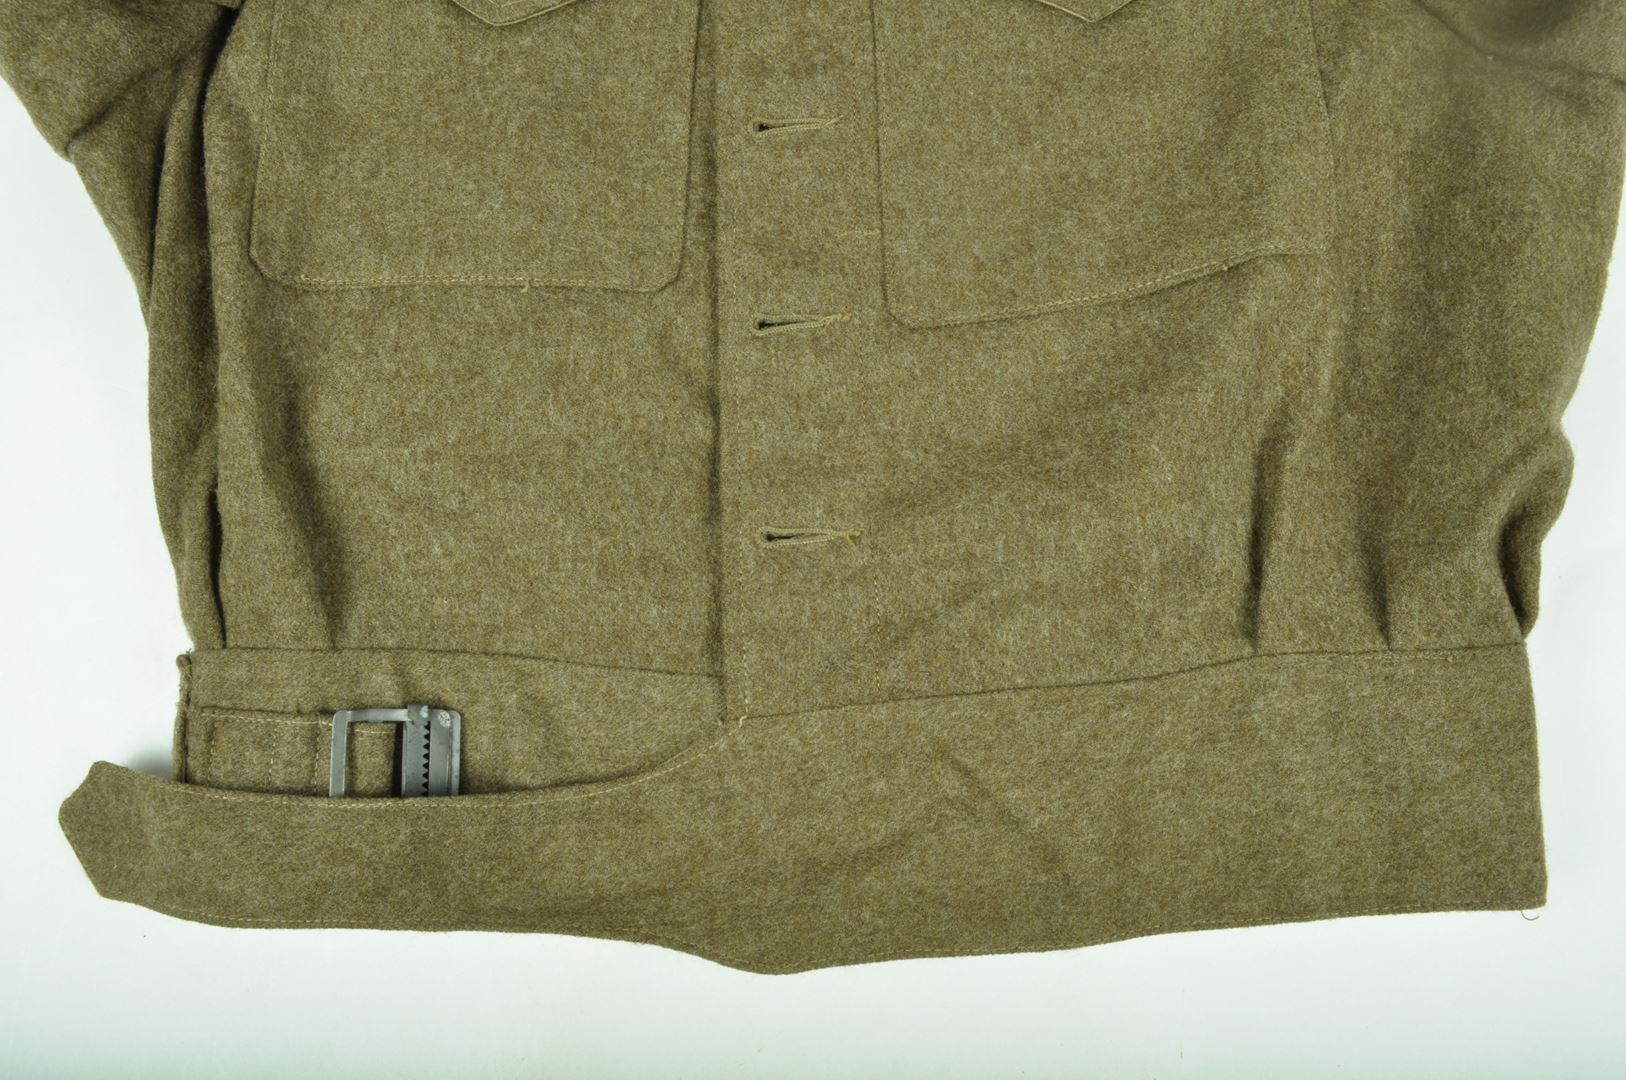 Blouson Battle Dress daté 1943 7ième Division Blindée / "Royal Armoured Corps"